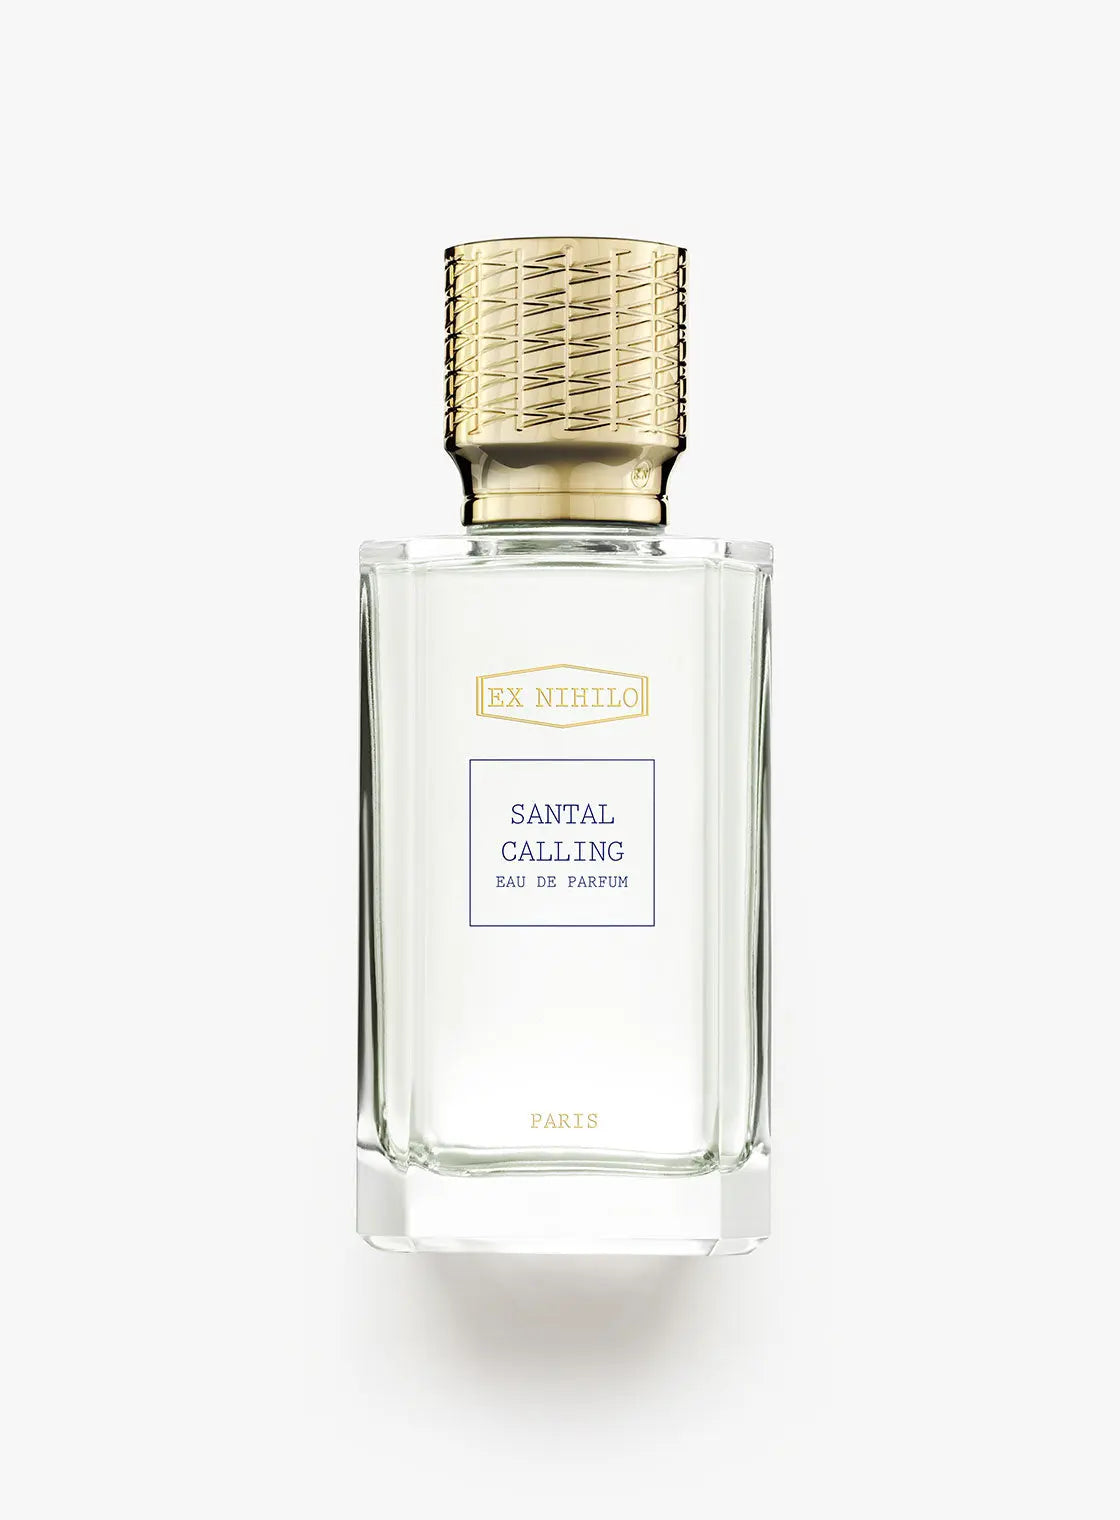 Ex nihilo Santal Calling eau de parfum - 50 ml